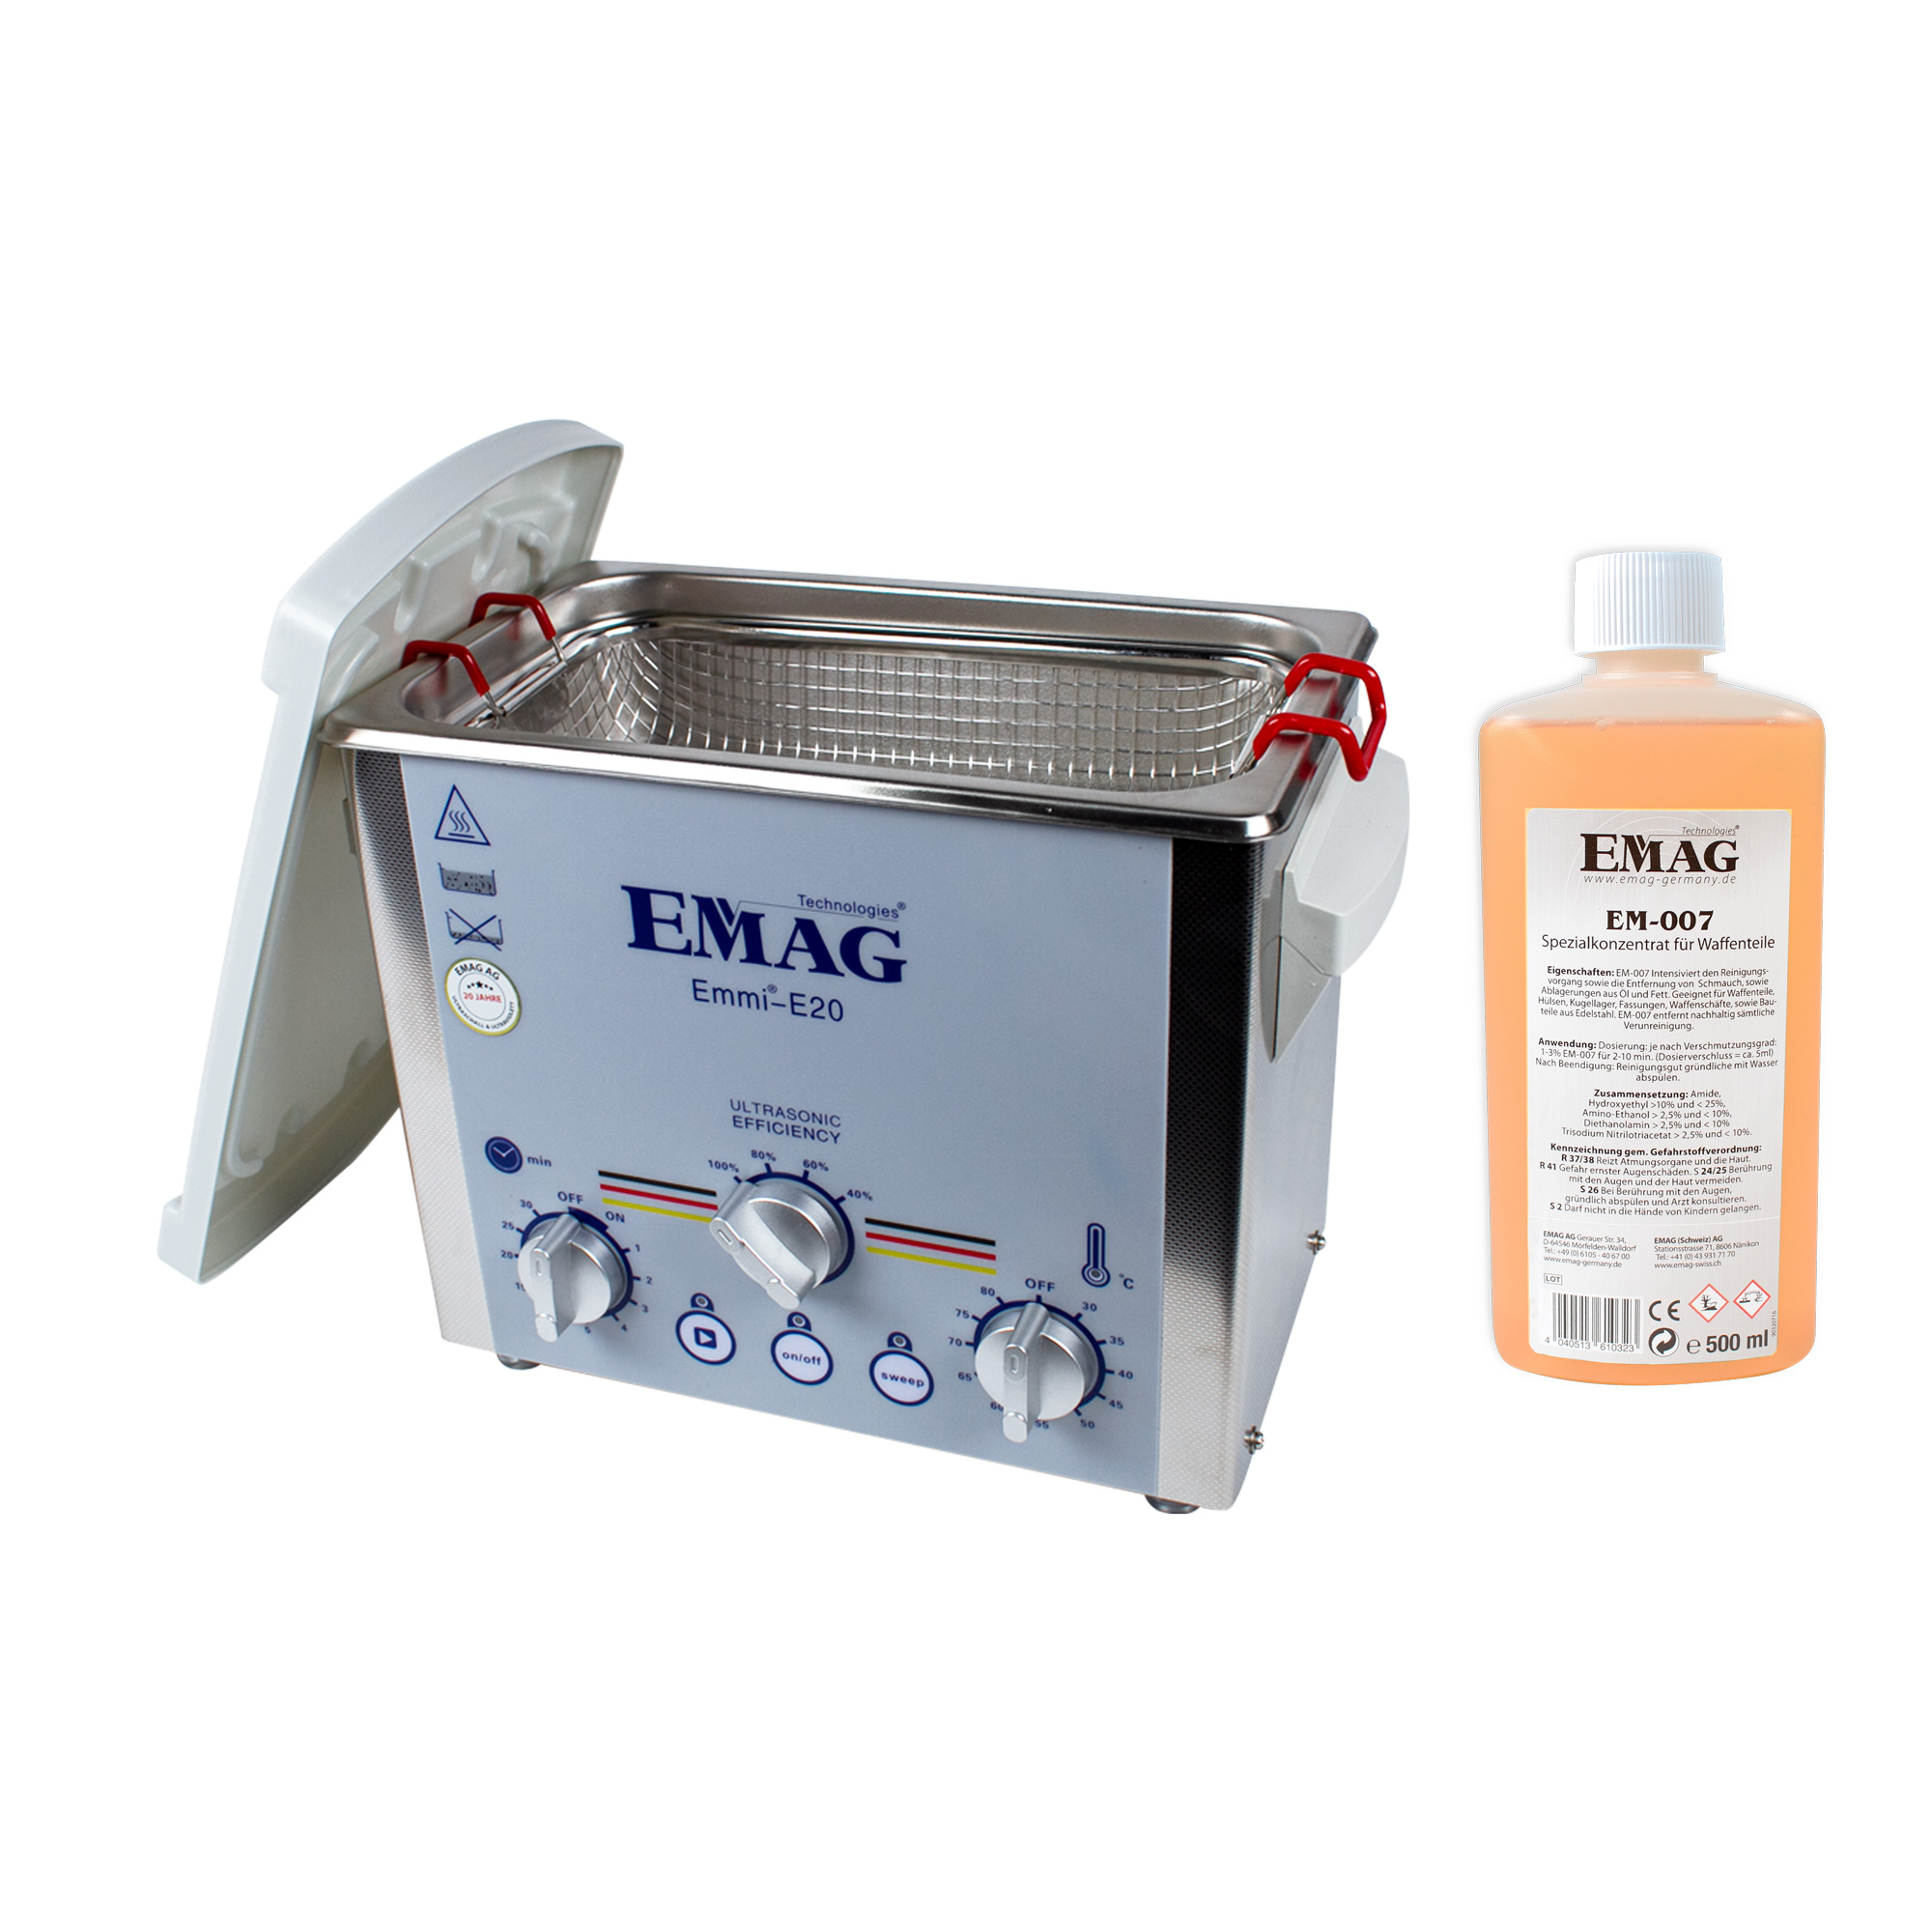 EMAG emmi® E20 Ultraschall Spezial-Set Ultraschallreinigungsgerät